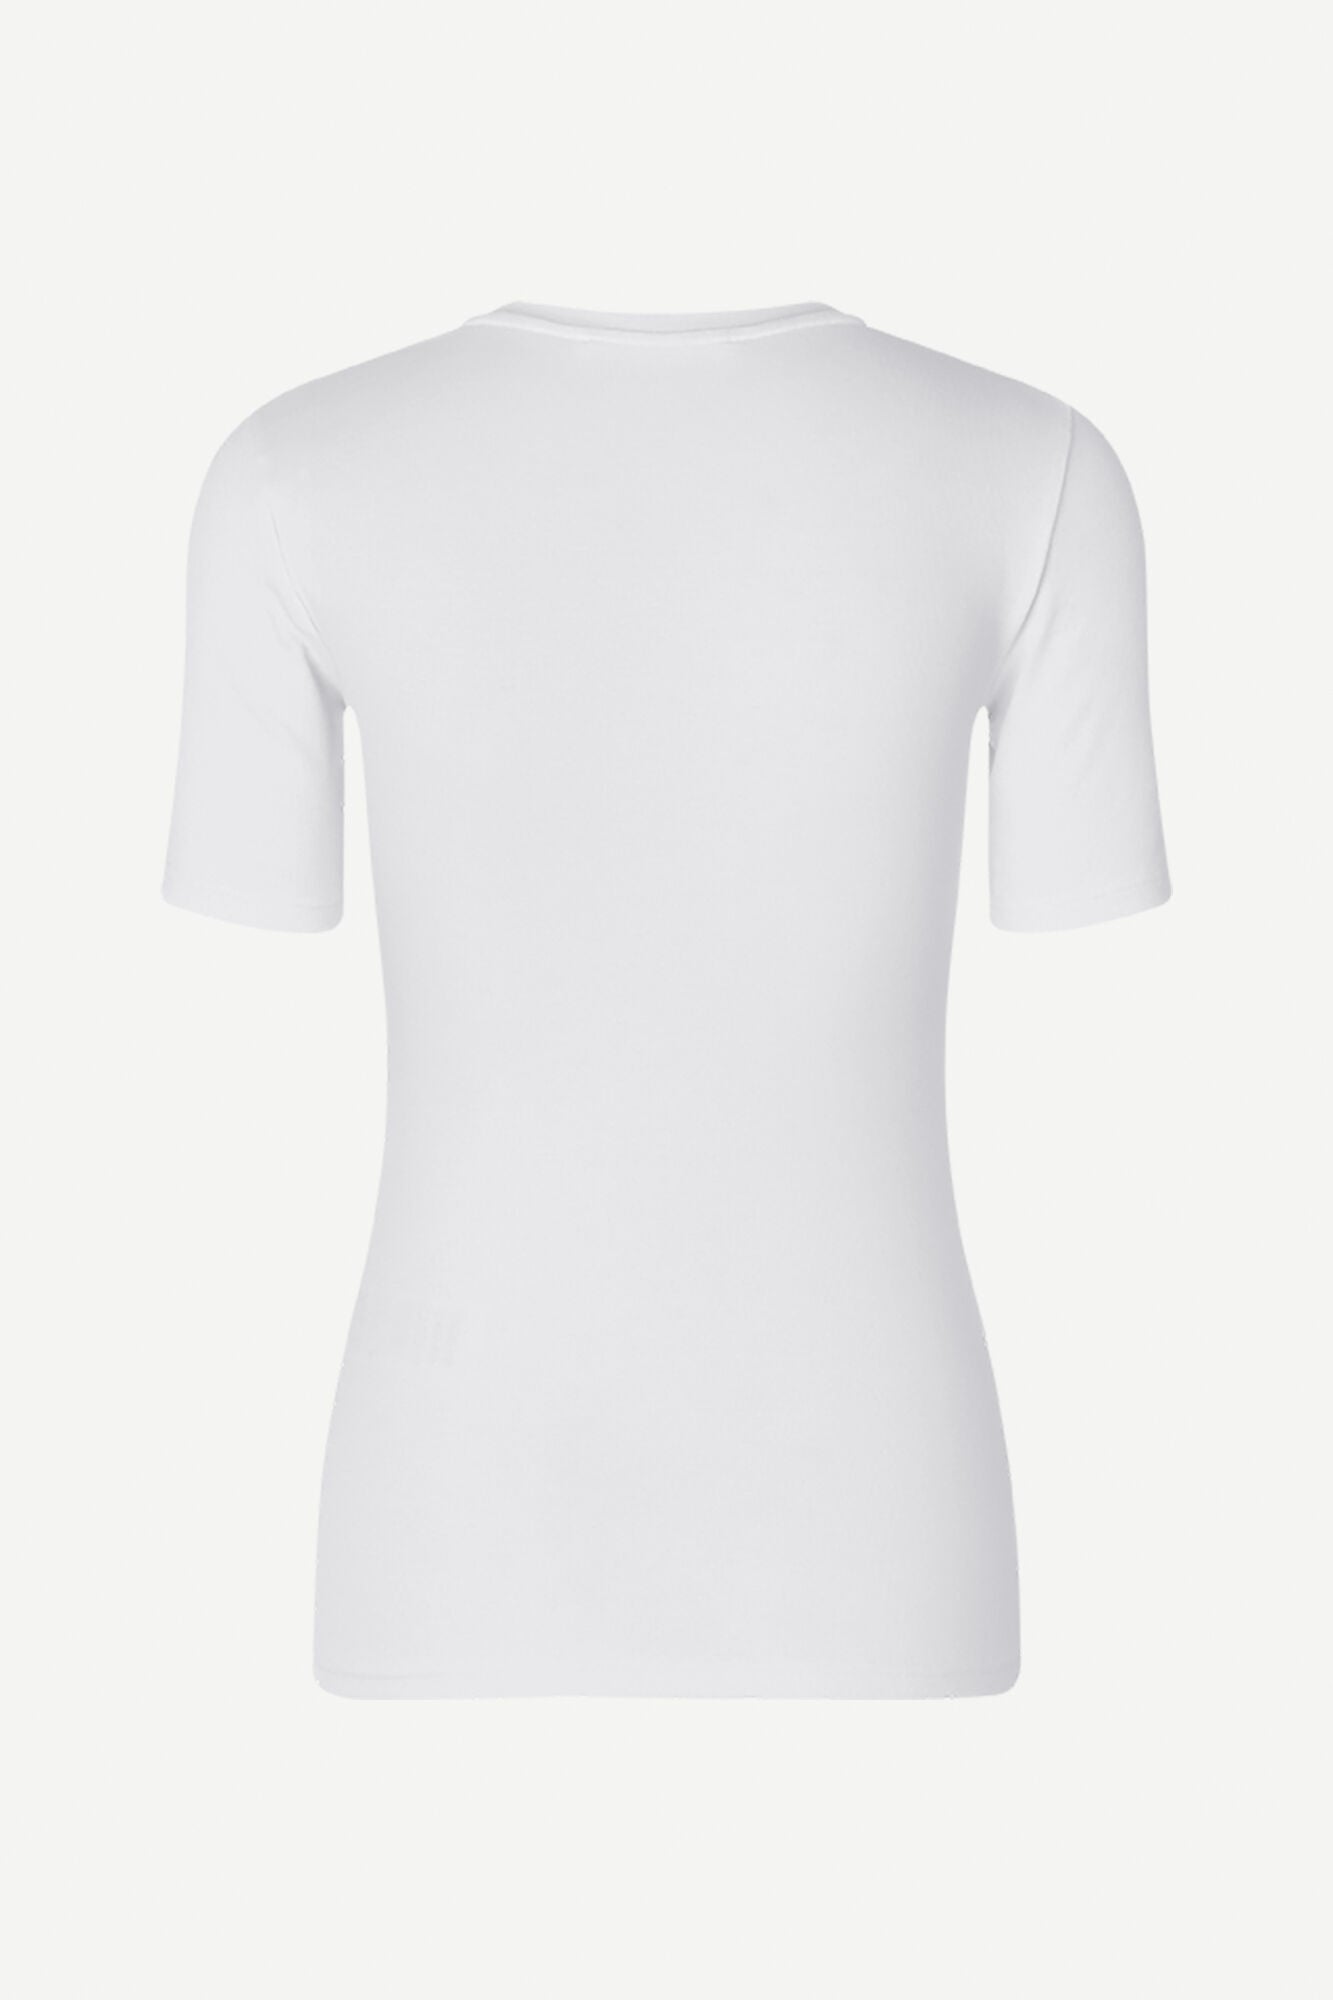 Short sleeved t-shirt in white